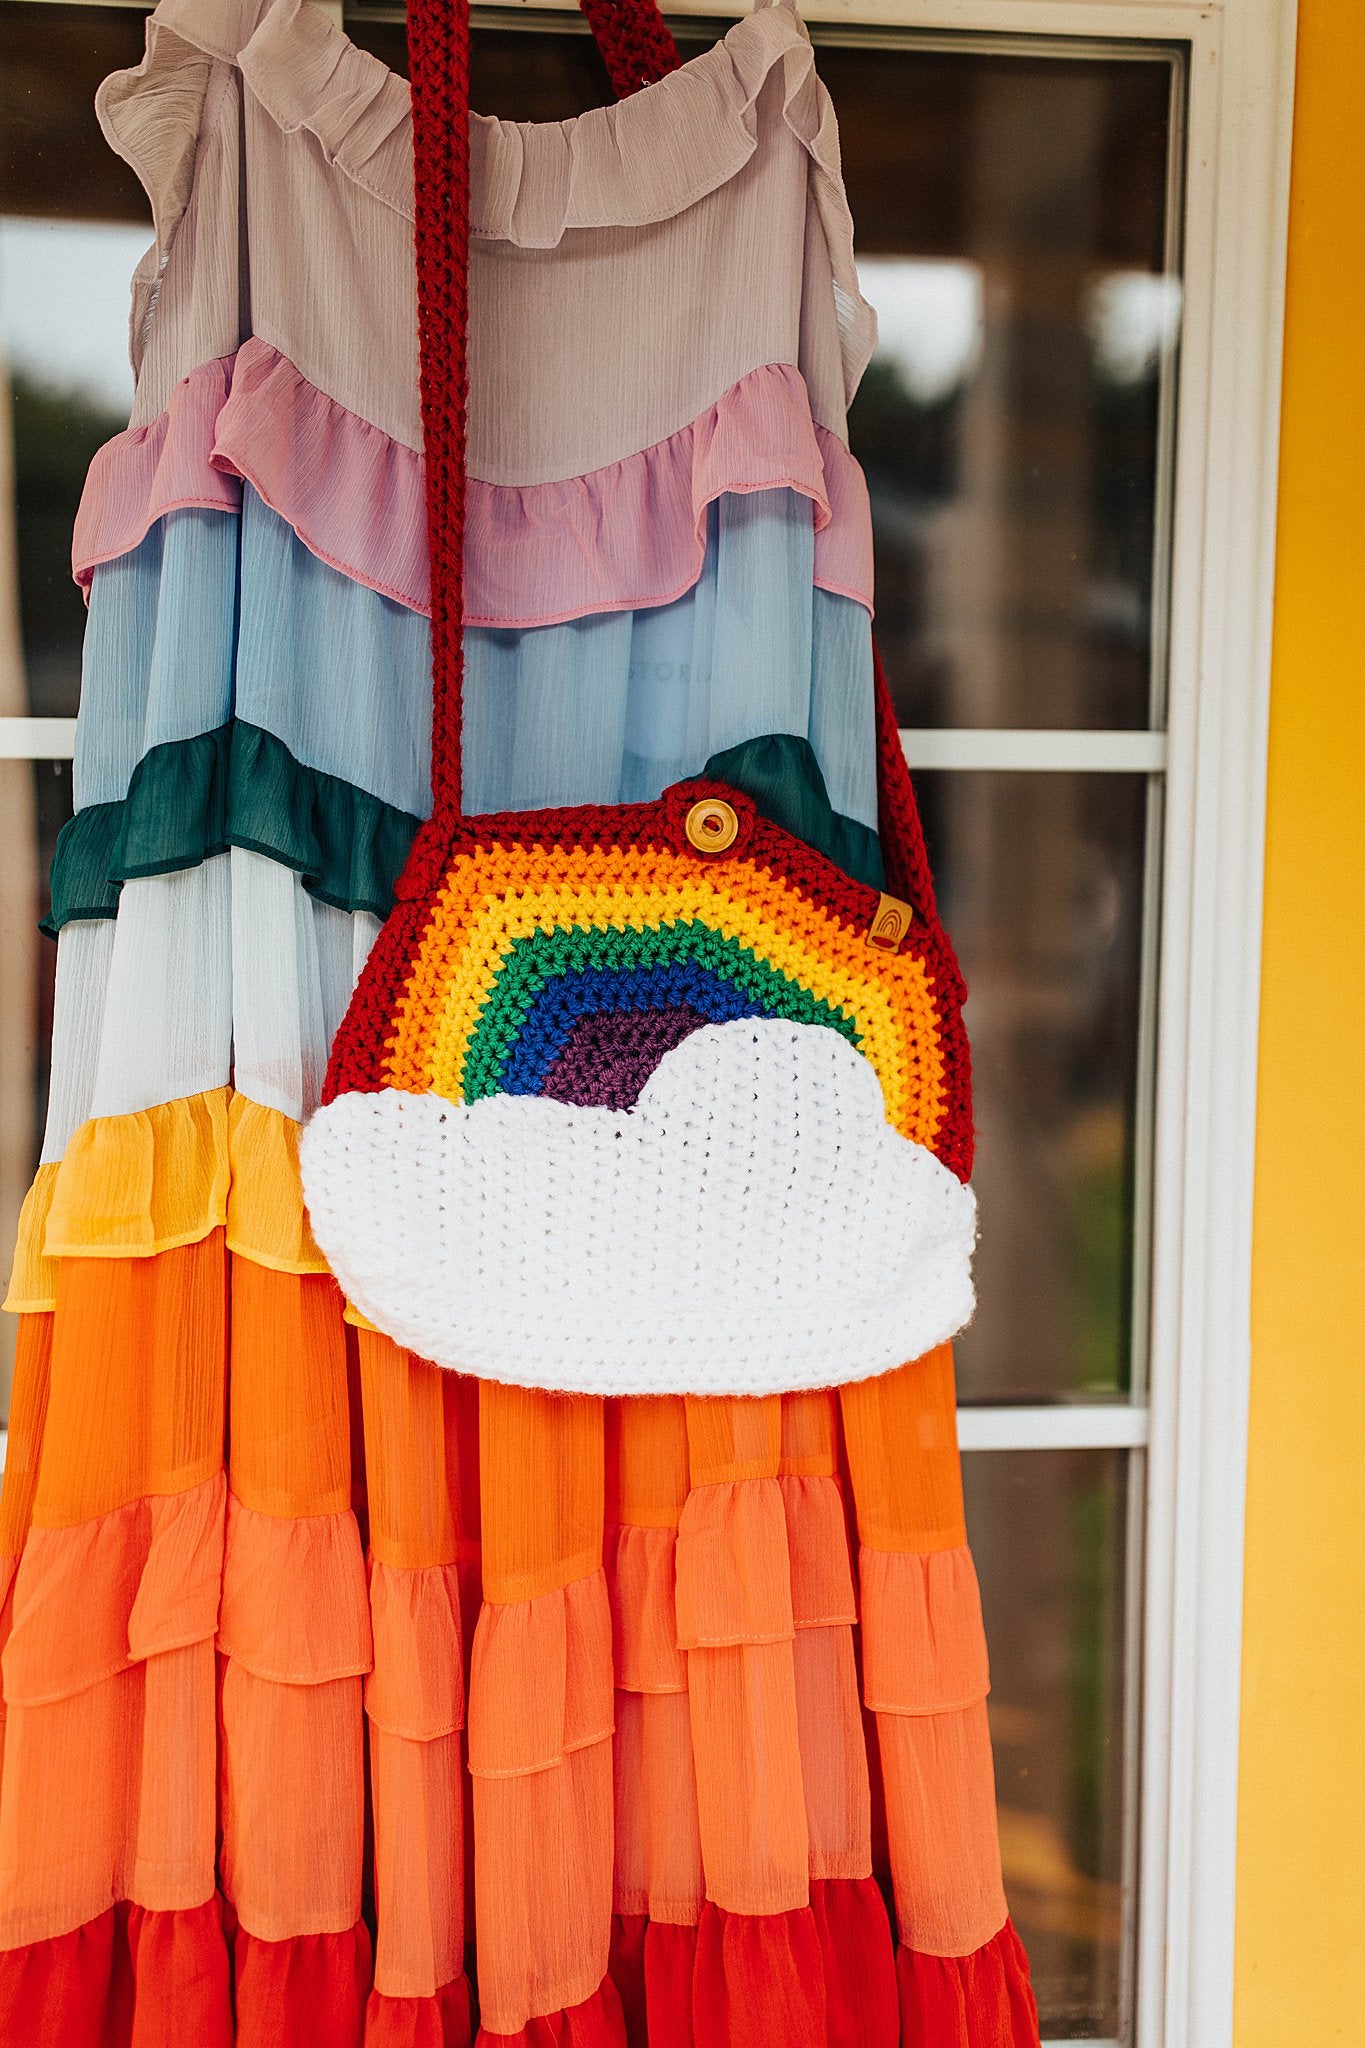 Rainbow Crochet Bag